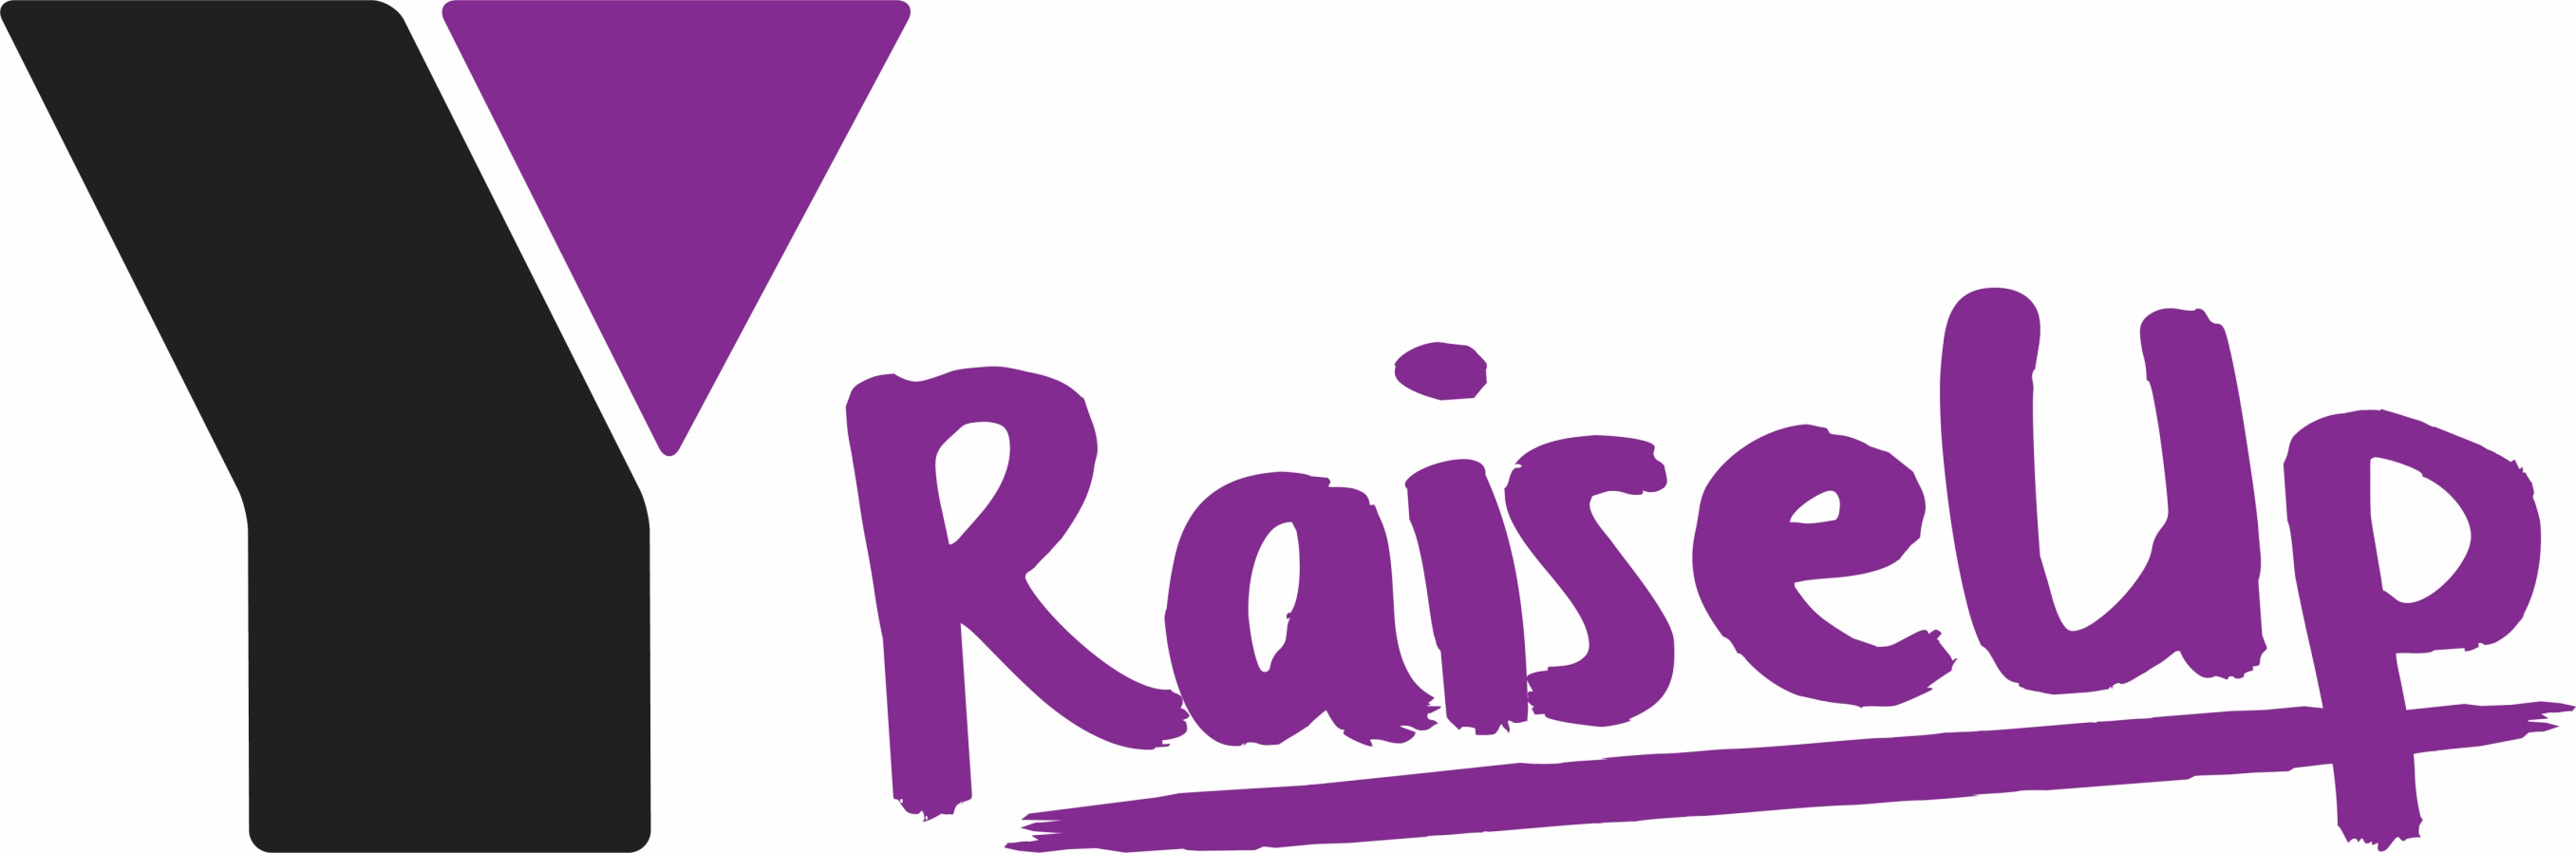 Y Raise Up Logo Resized